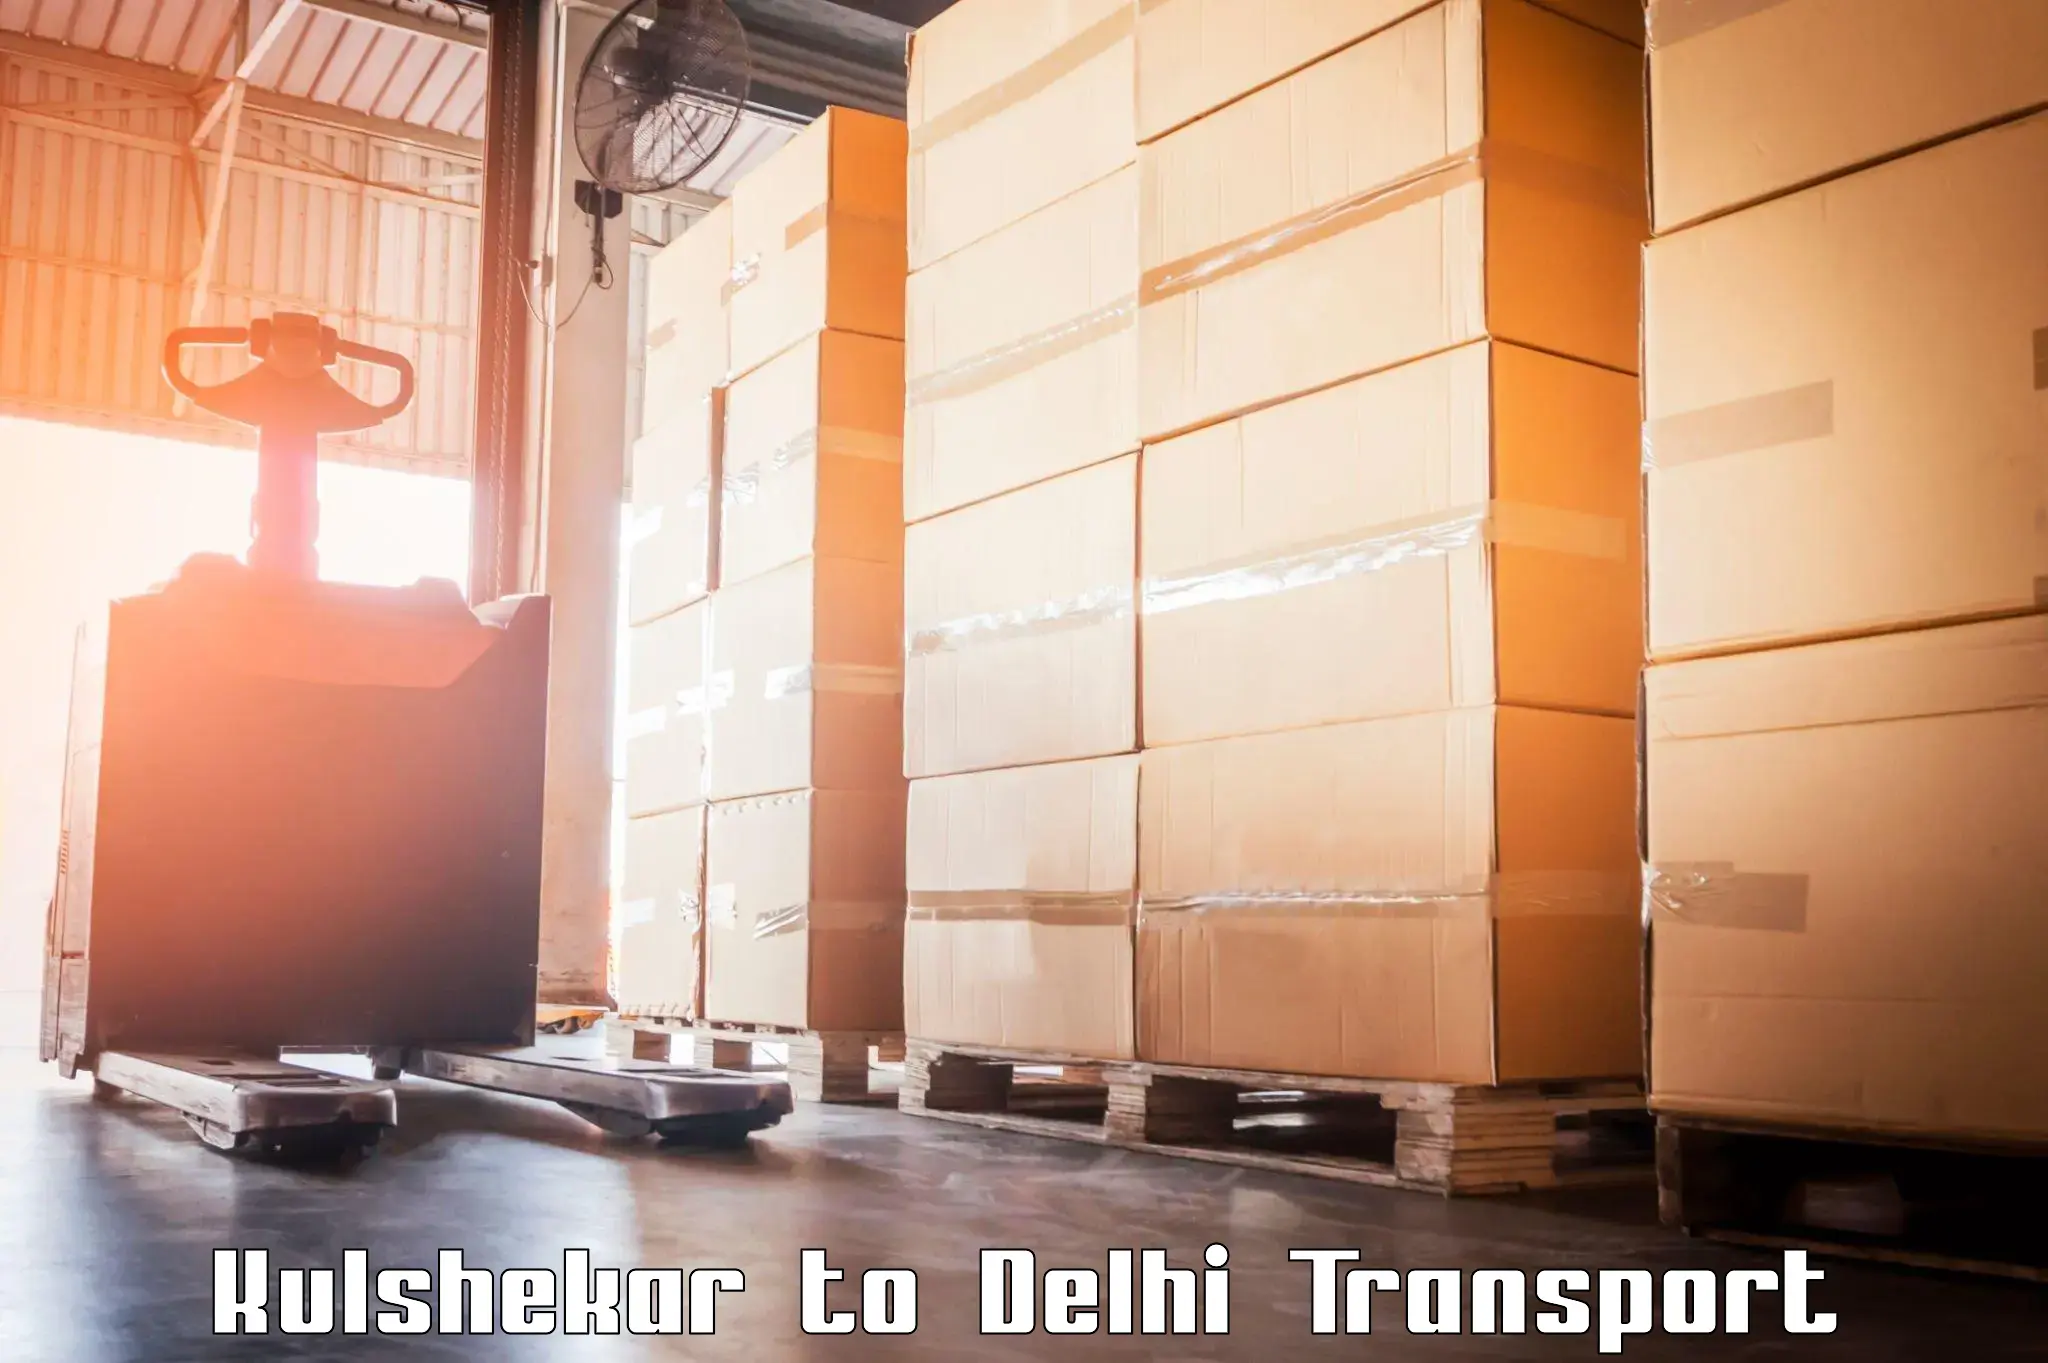 Daily transport service in Kulshekar to Jamia Millia Islamia New Delhi